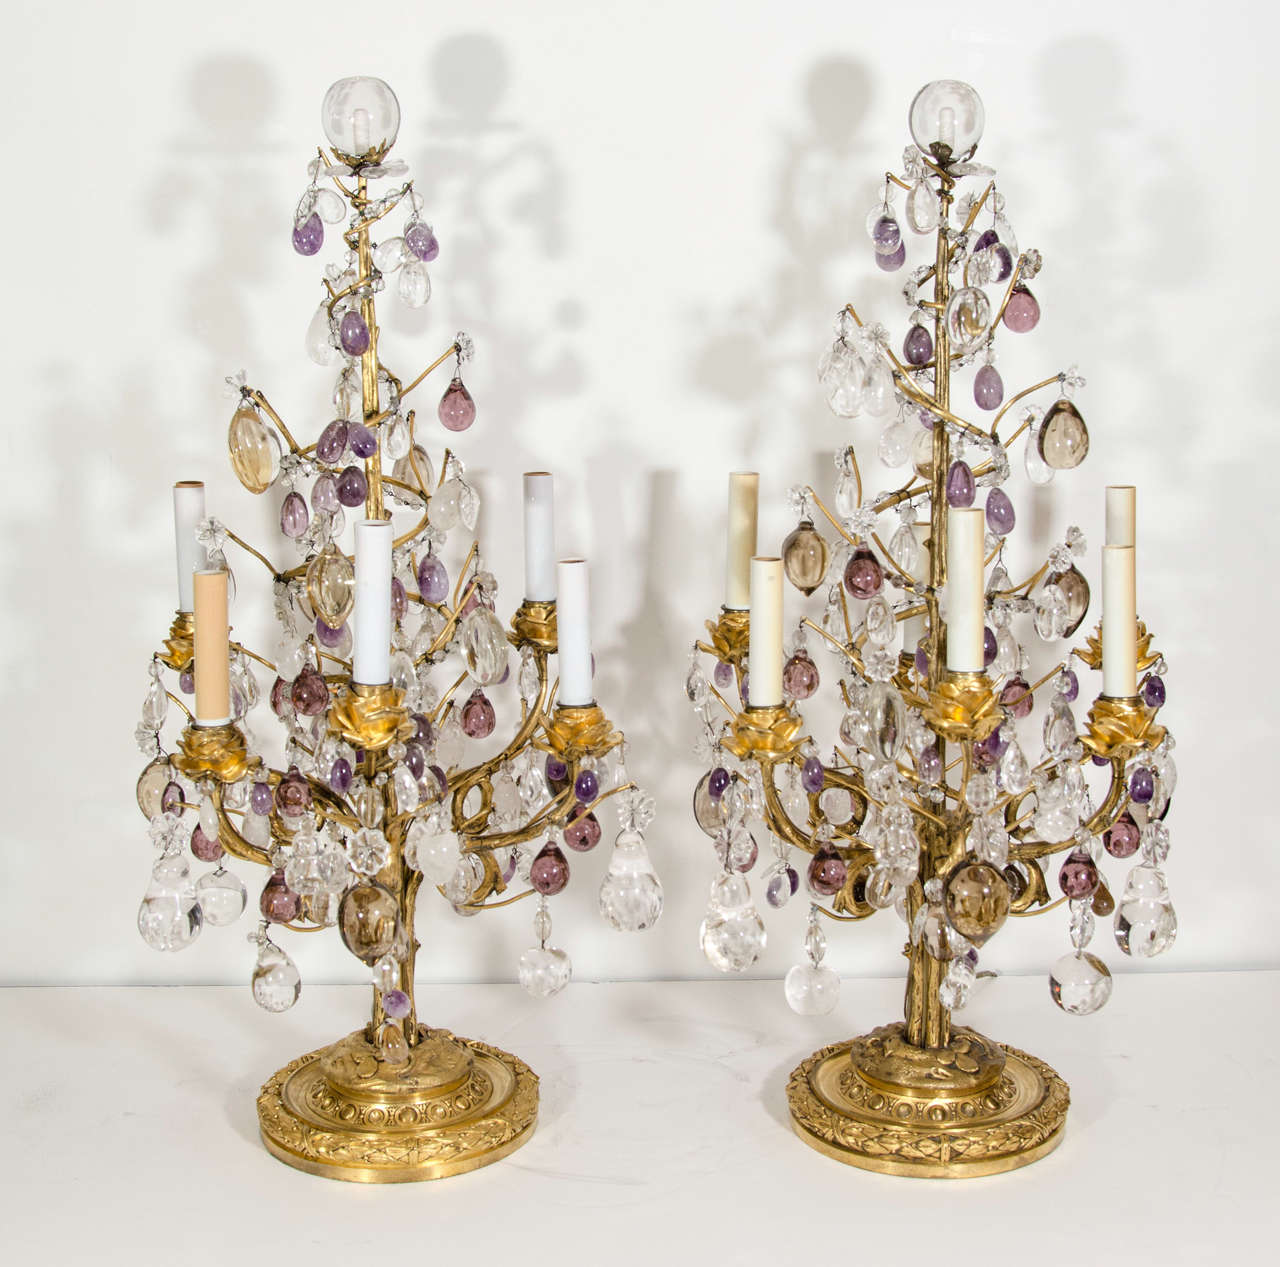 Paire d'exquises et rares lampes de table de style Louis XVI en bronze doré, cristal de roche taillé, cristal de roche améthyste et verre ambré, ornées de bras floraux en bronze doré et de fruits en cristal de roche et de prismes de différentes